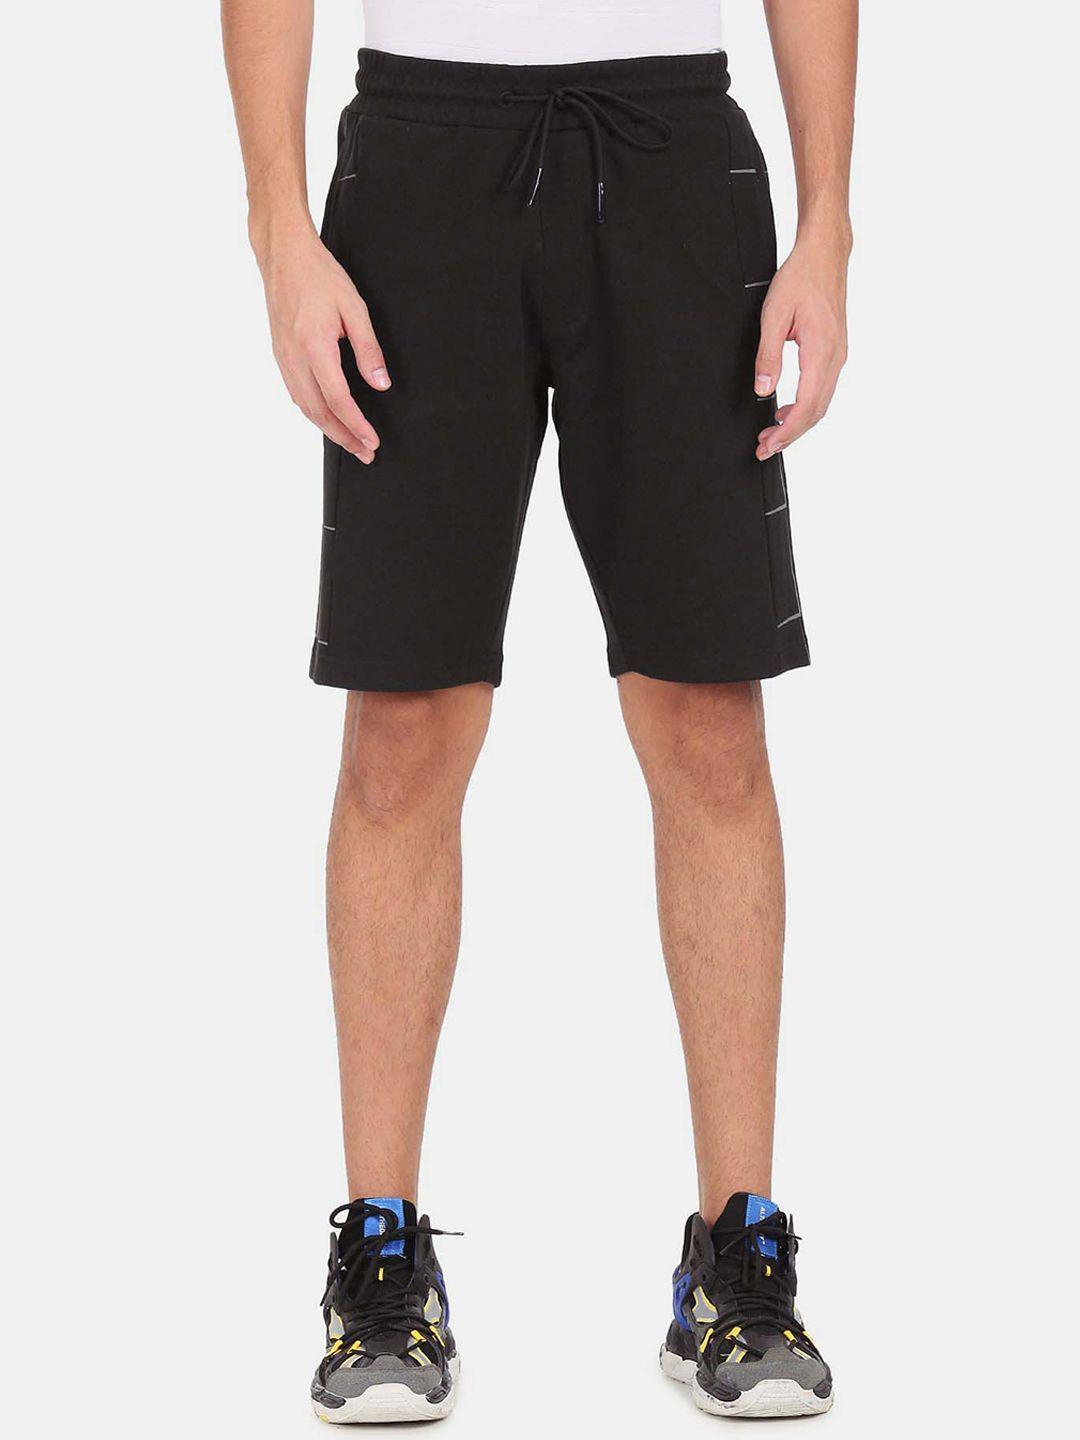 arrow-new-york-men-sports-shorts